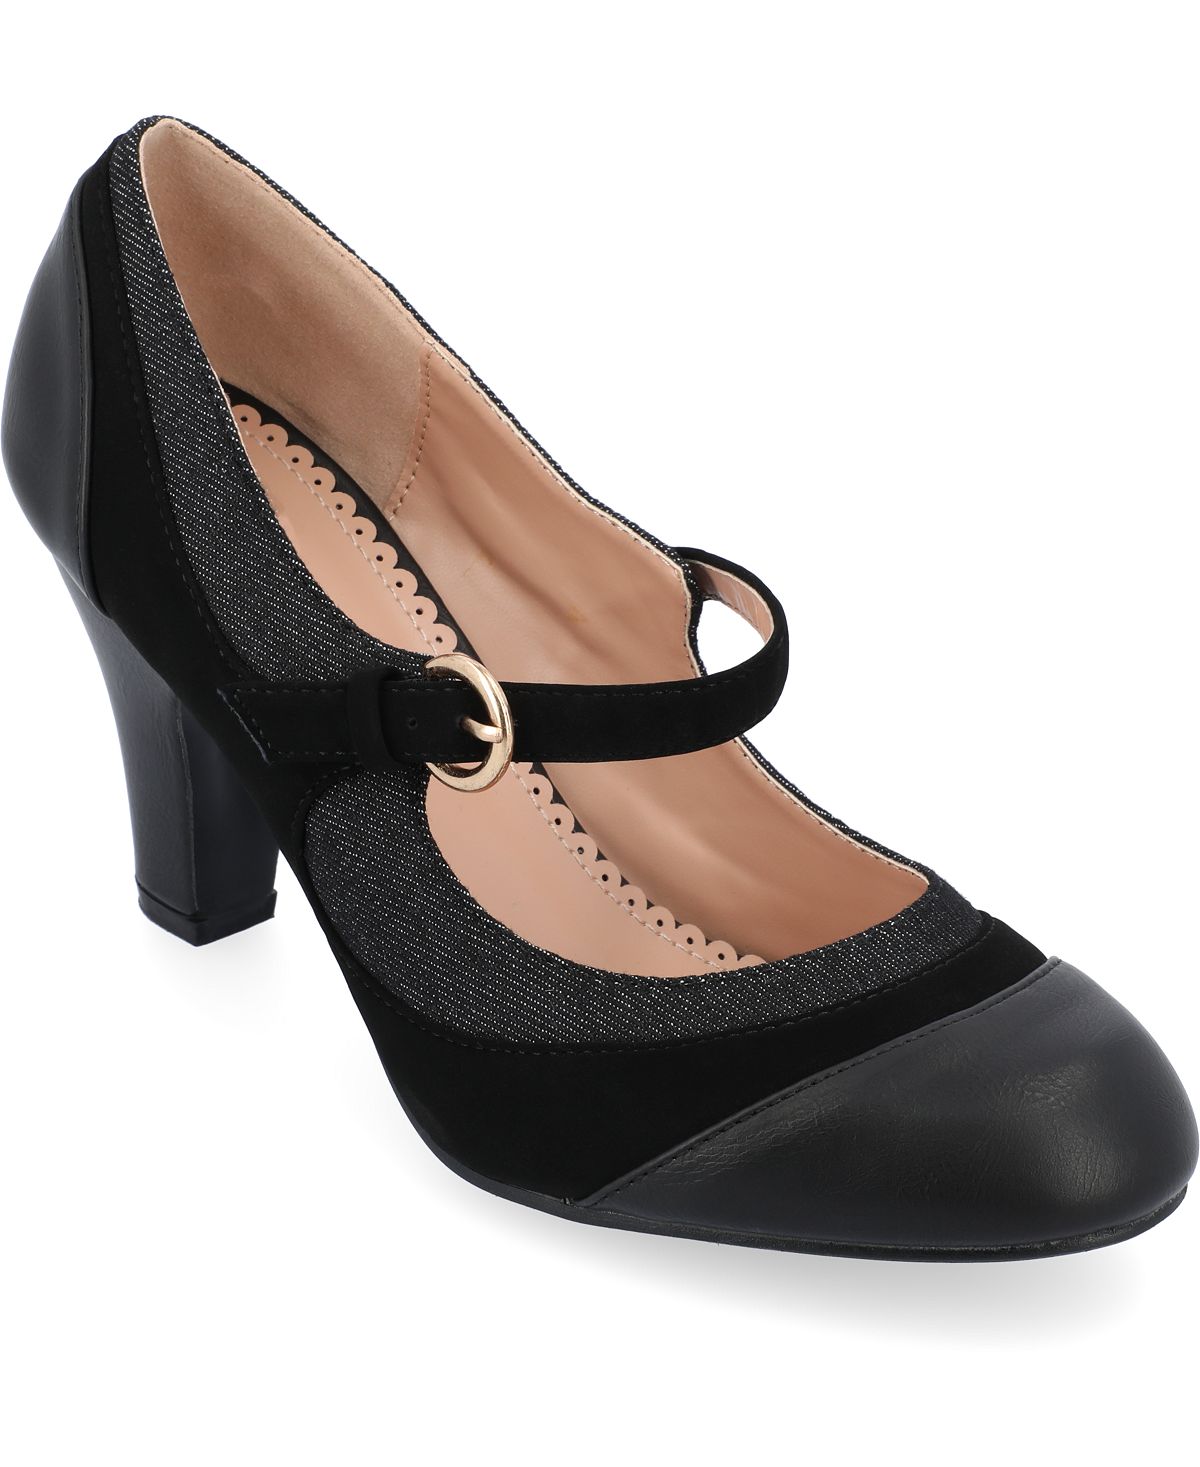 Женские твидовые туфли на каблуке с пряжкой Siri Journee Collection, черный